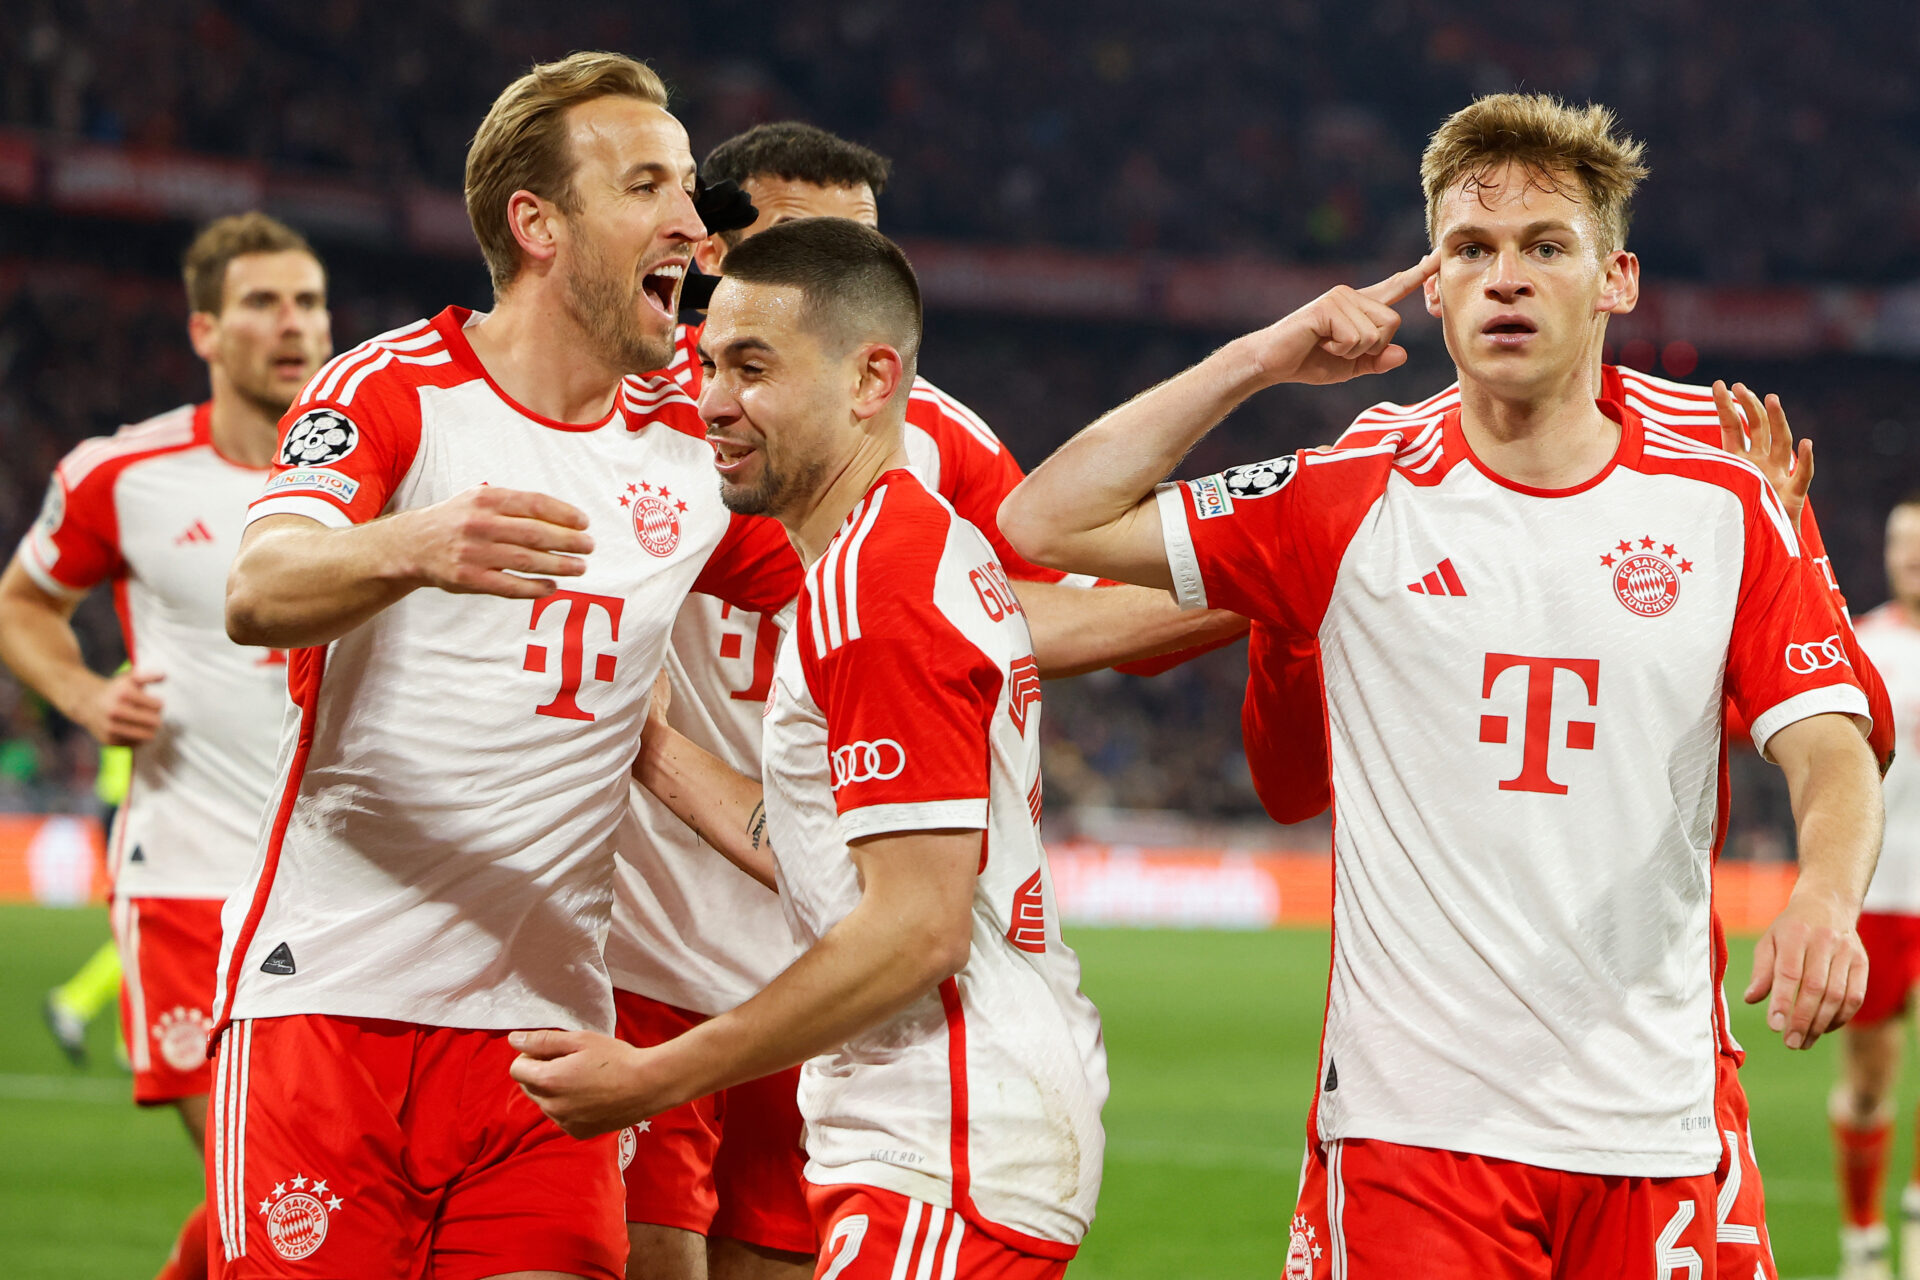 El Bayern de Múnich, rival histórico del Madrid en Champions